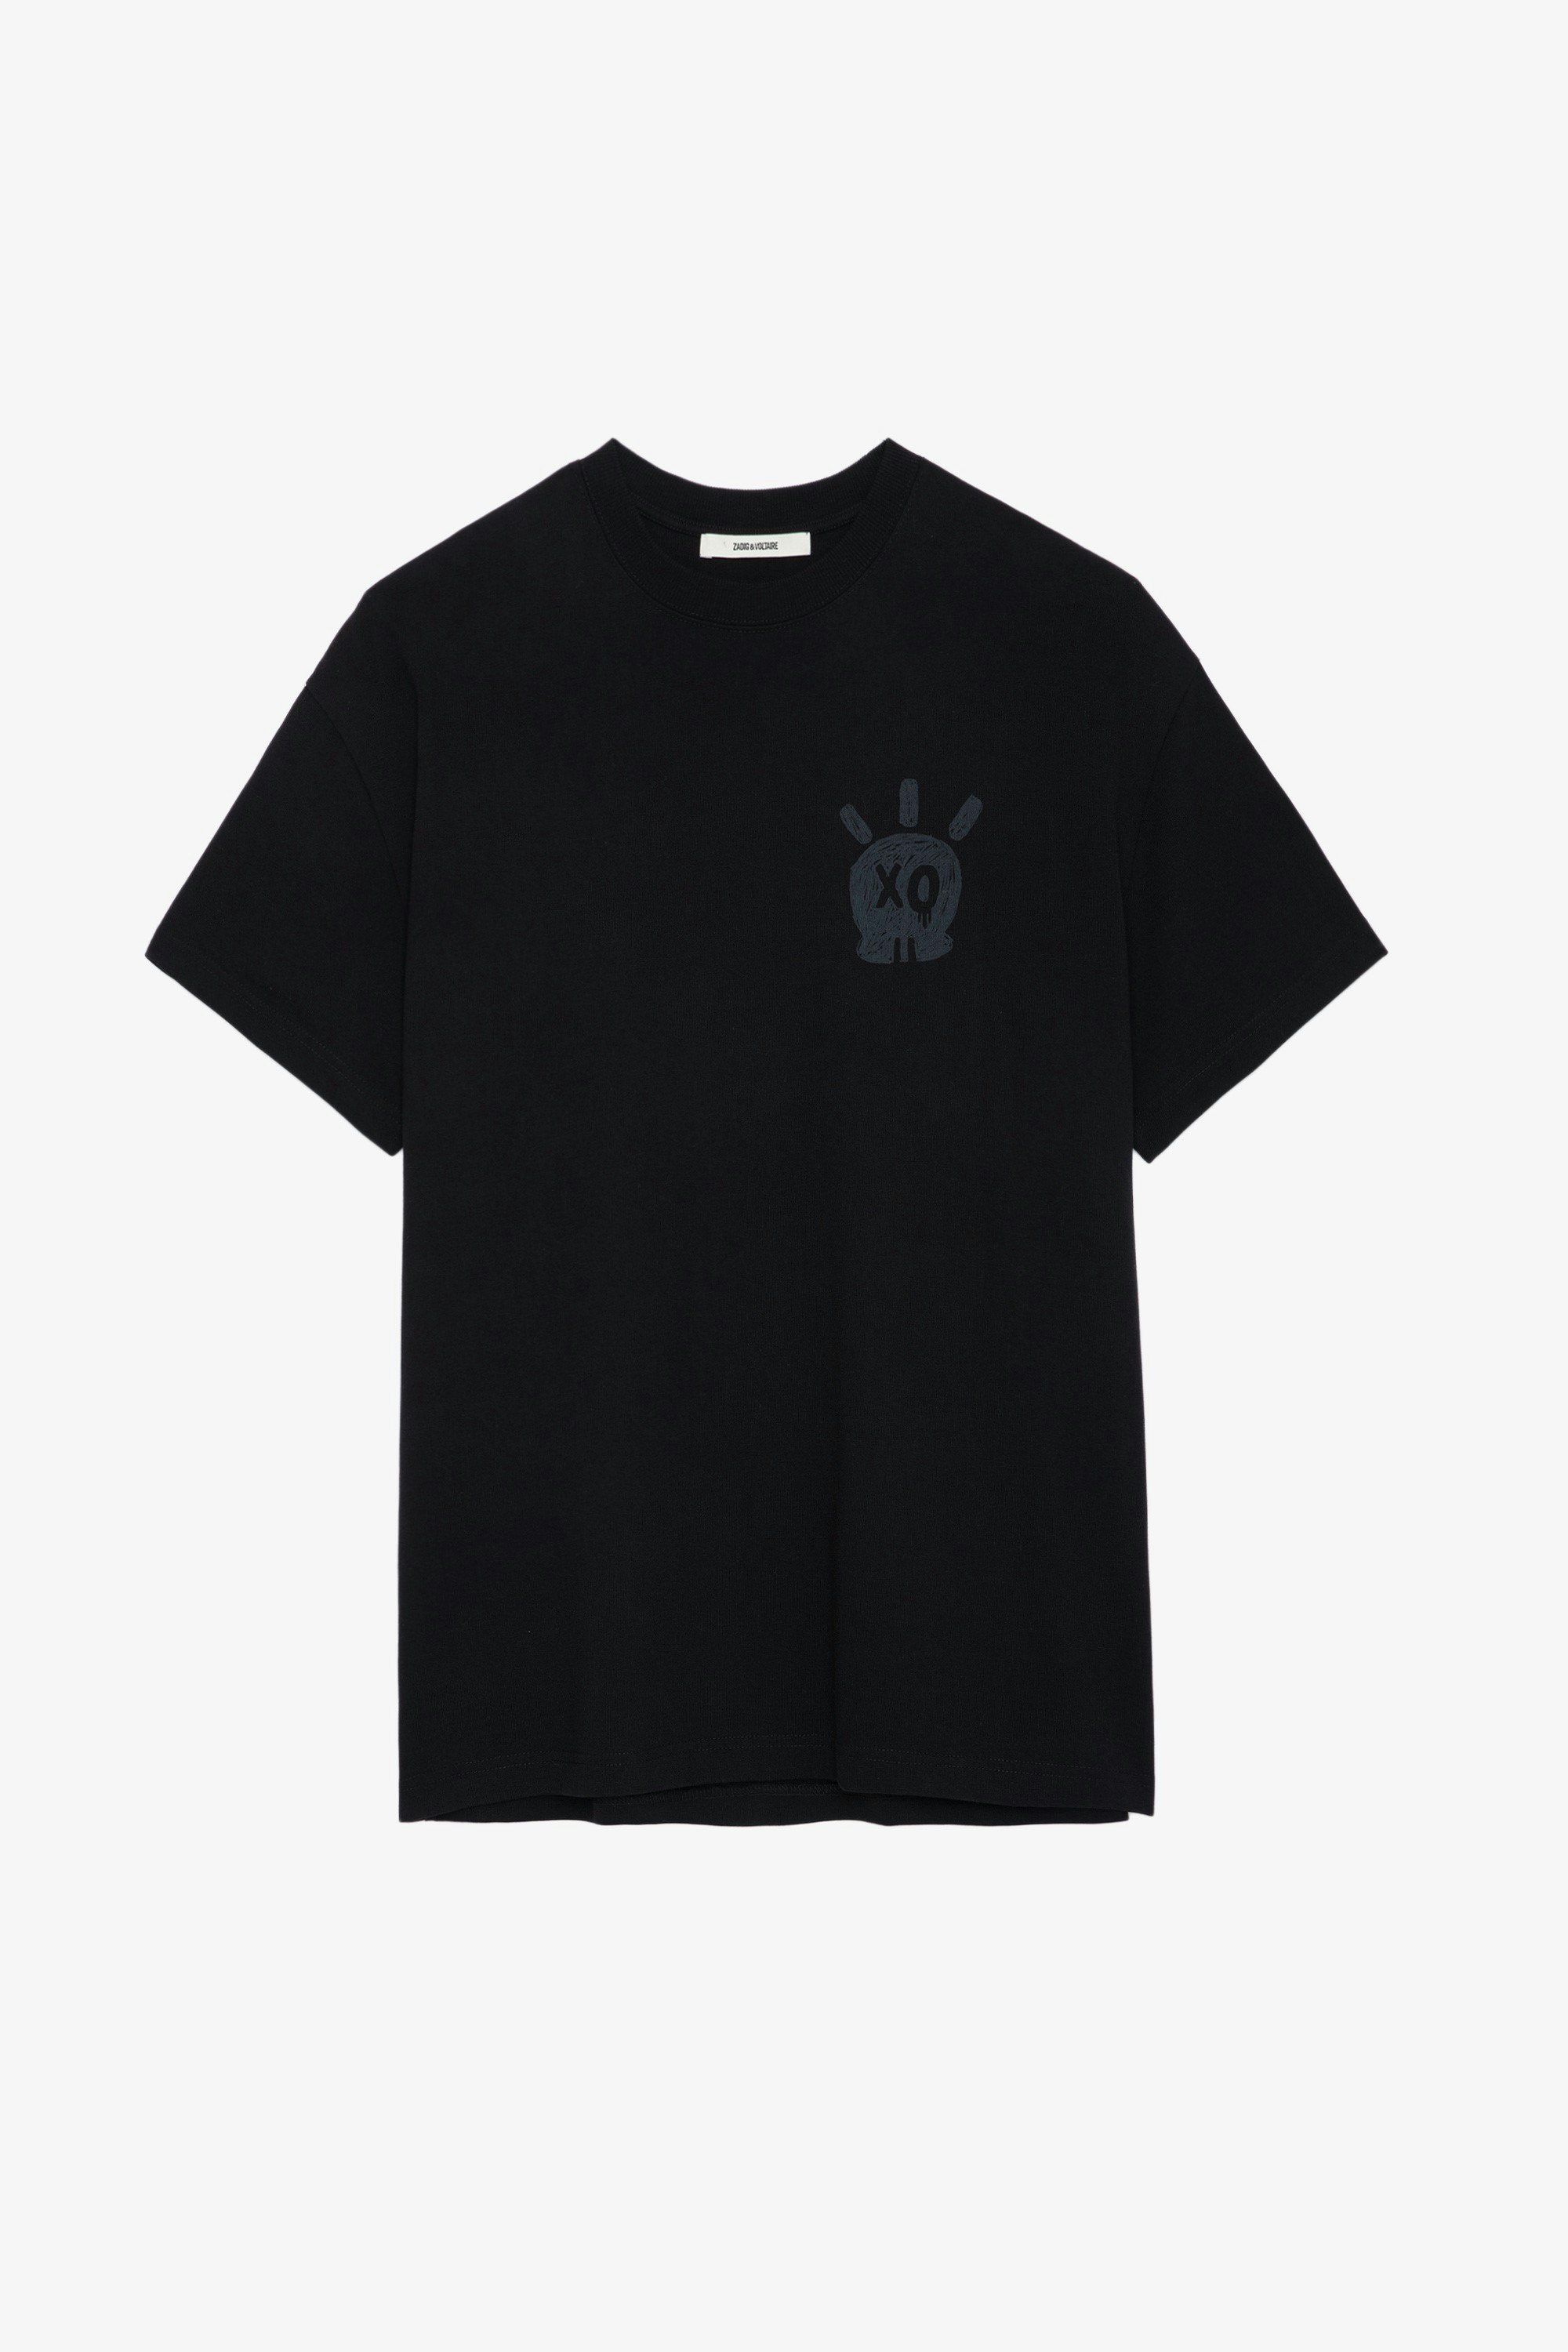 T-shirt Teddy Skull - T-shirt en coton noir à col rond, manches courtes et imprimé Skull XO.